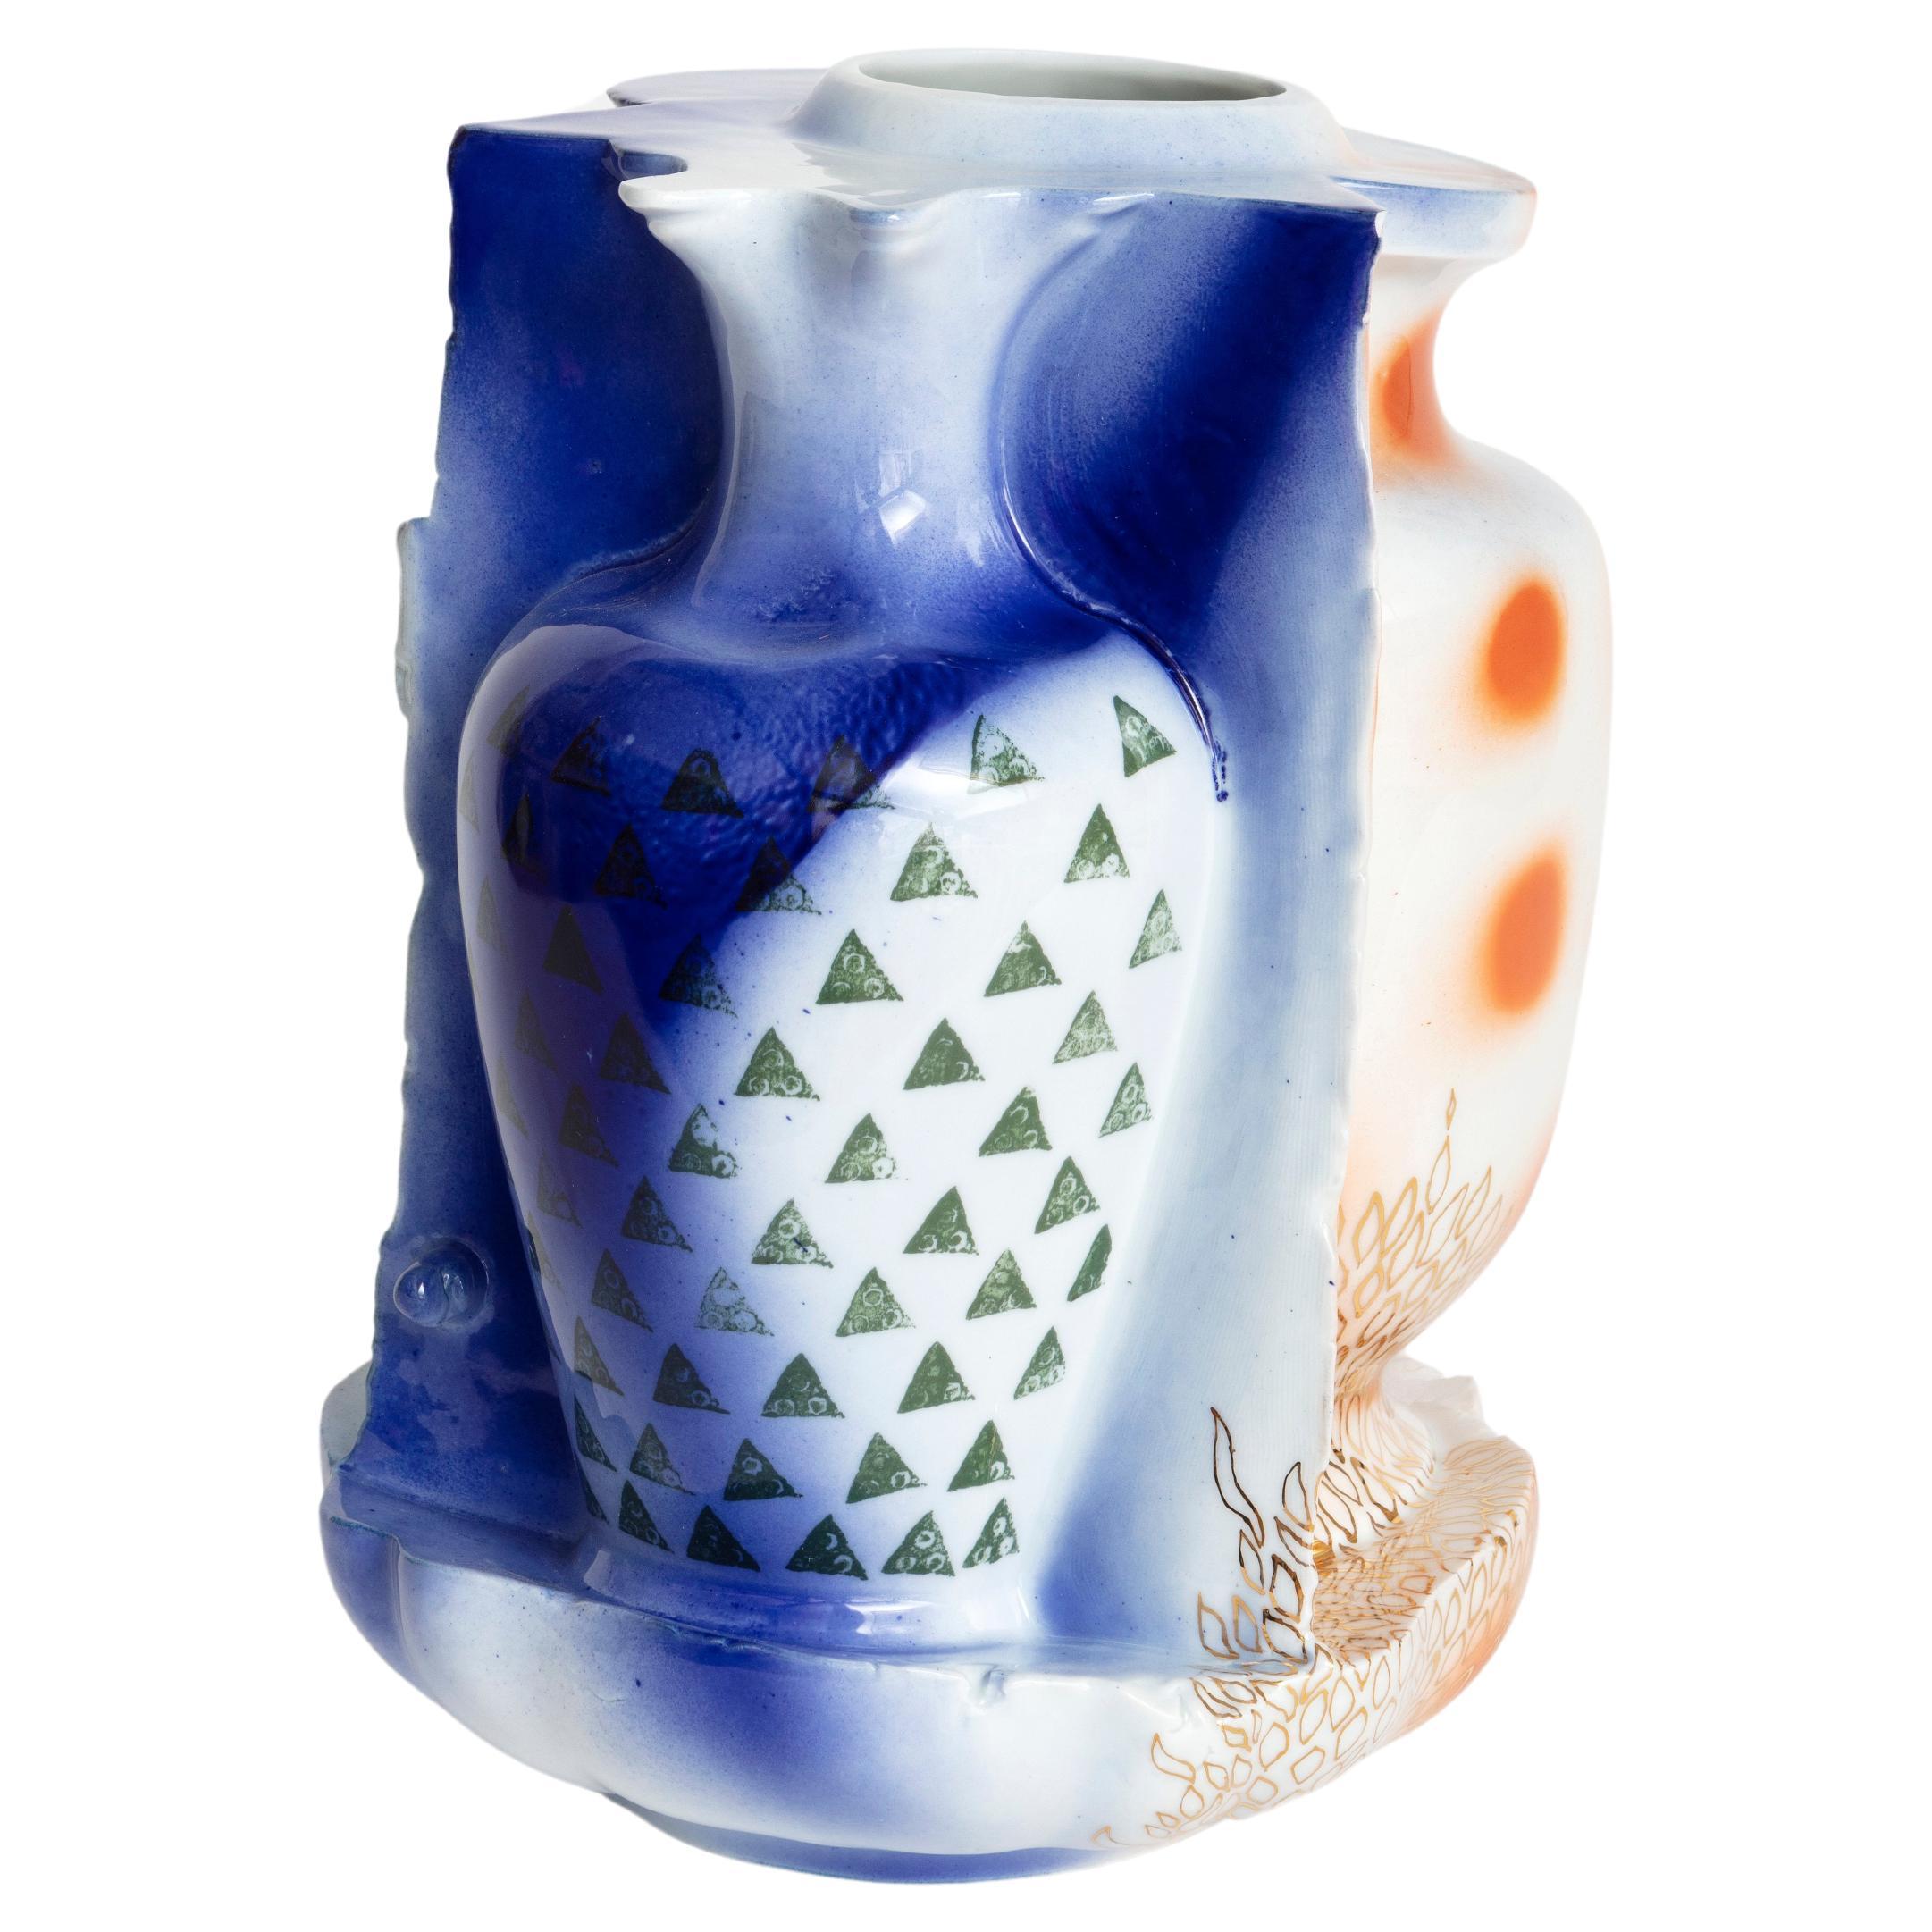 "Fire" decorated enameled porcelain vase, unique piece